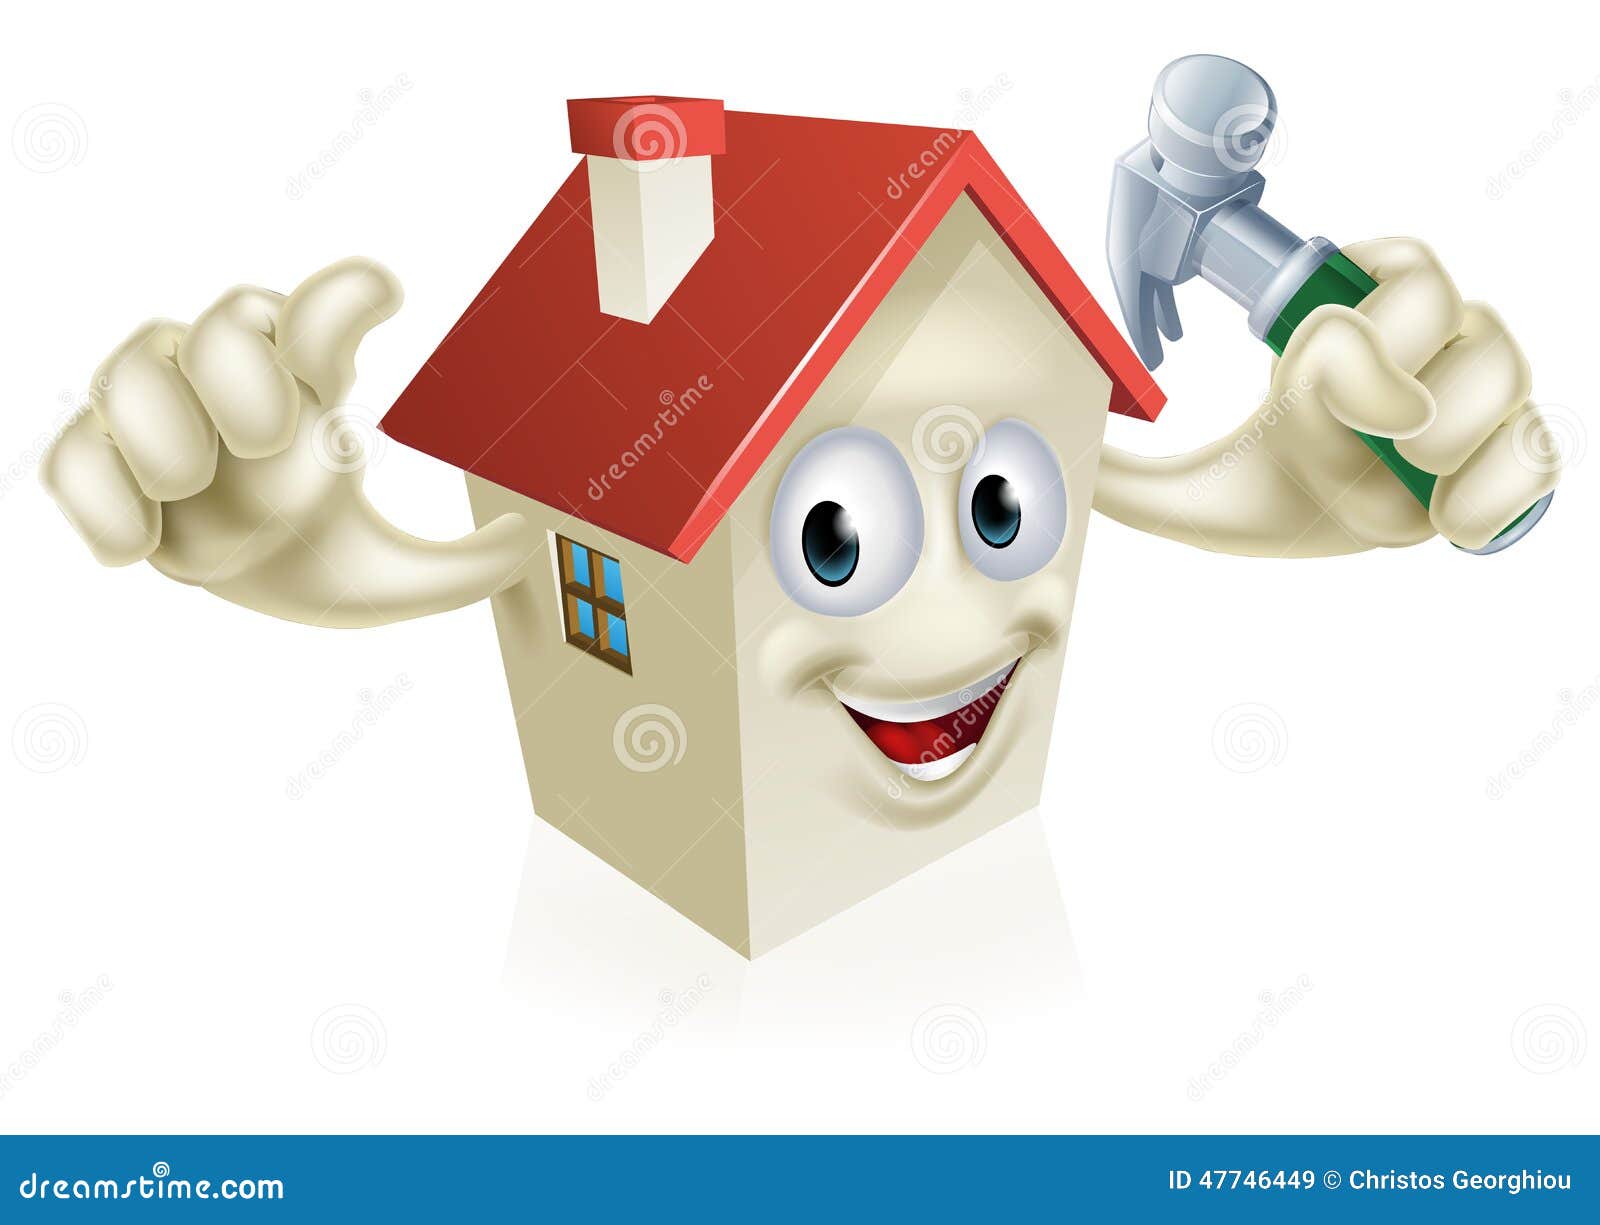 Haus, das Hammer hält. Eine Illustration eines Karikaturhauscharakters, der einen Hammer hält Konzept für Heimwerken, DIY oder Ähnliches